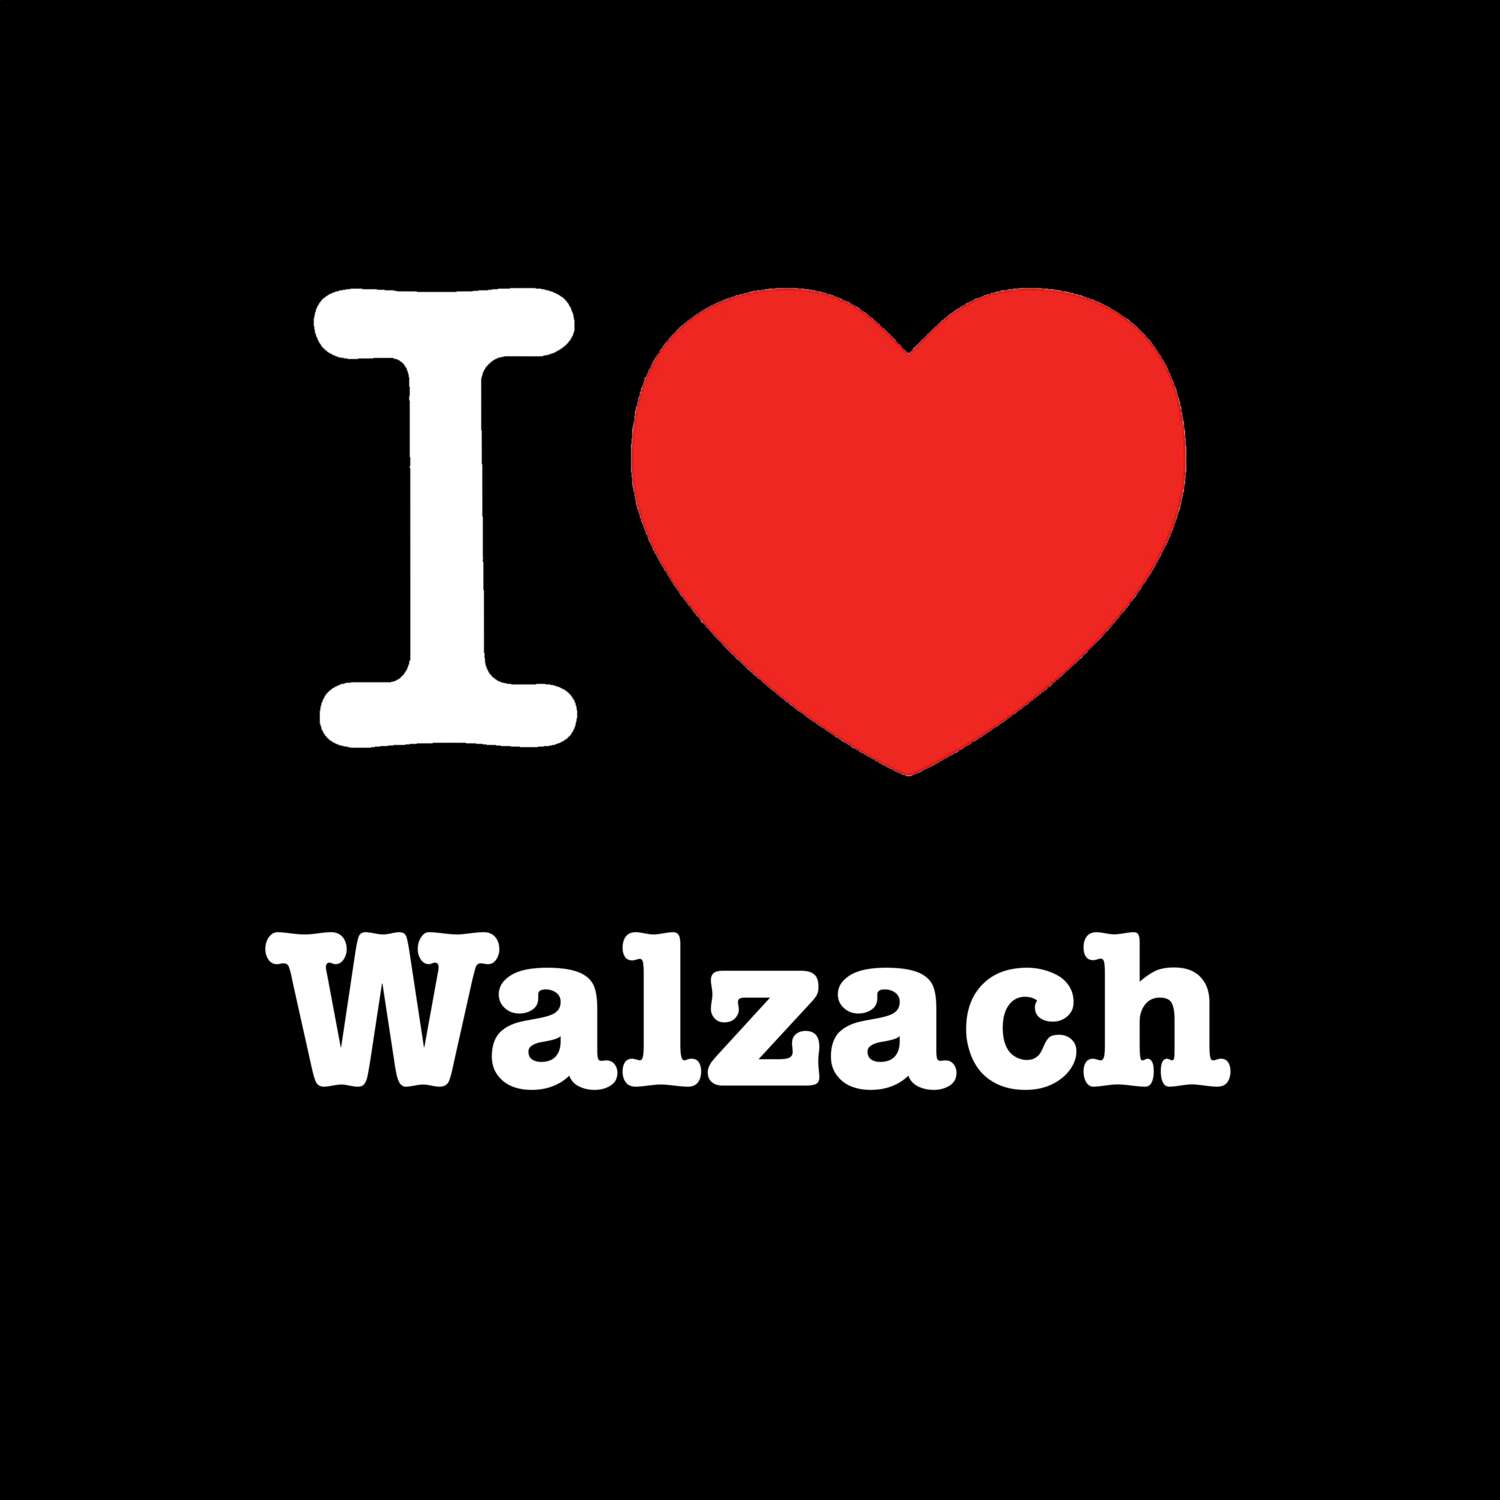 Walzach T-Shirt »I love«